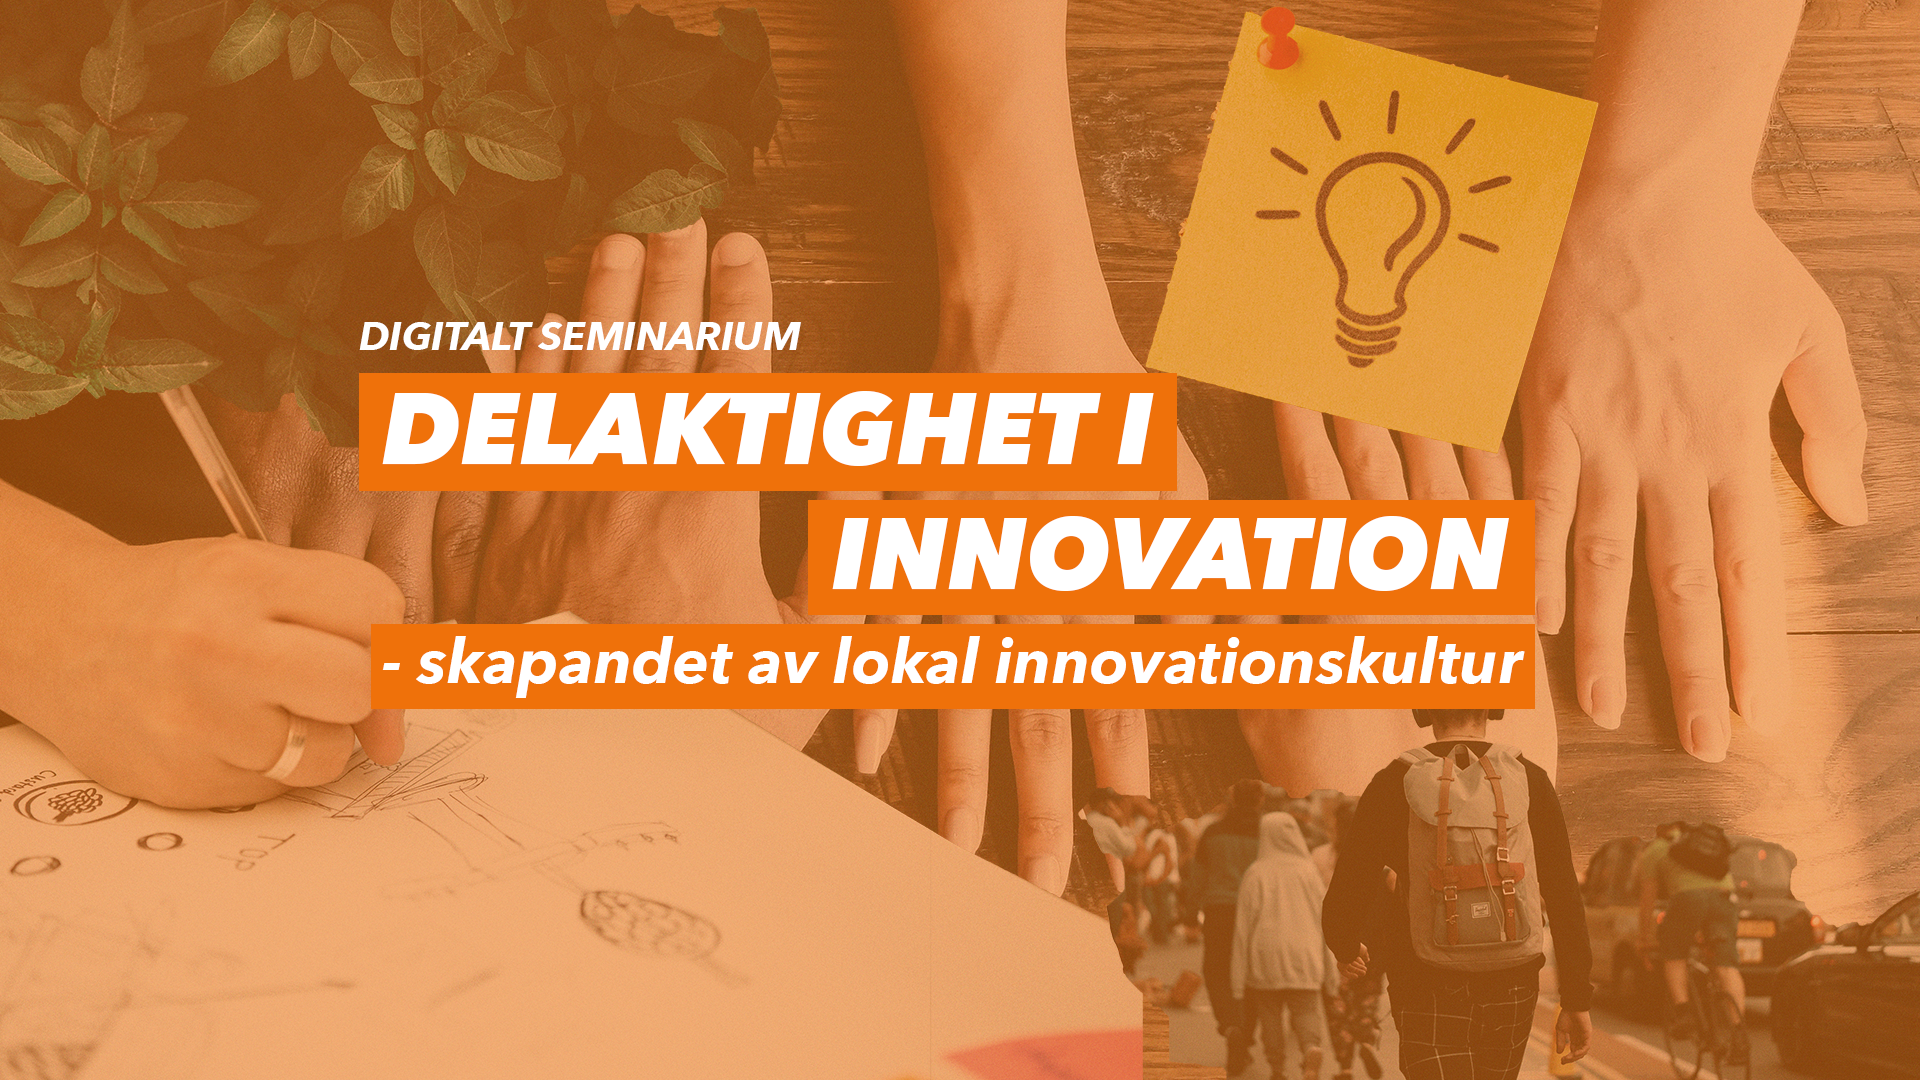 Delaktighet i innovation - skapandet av lokal innovationskultur